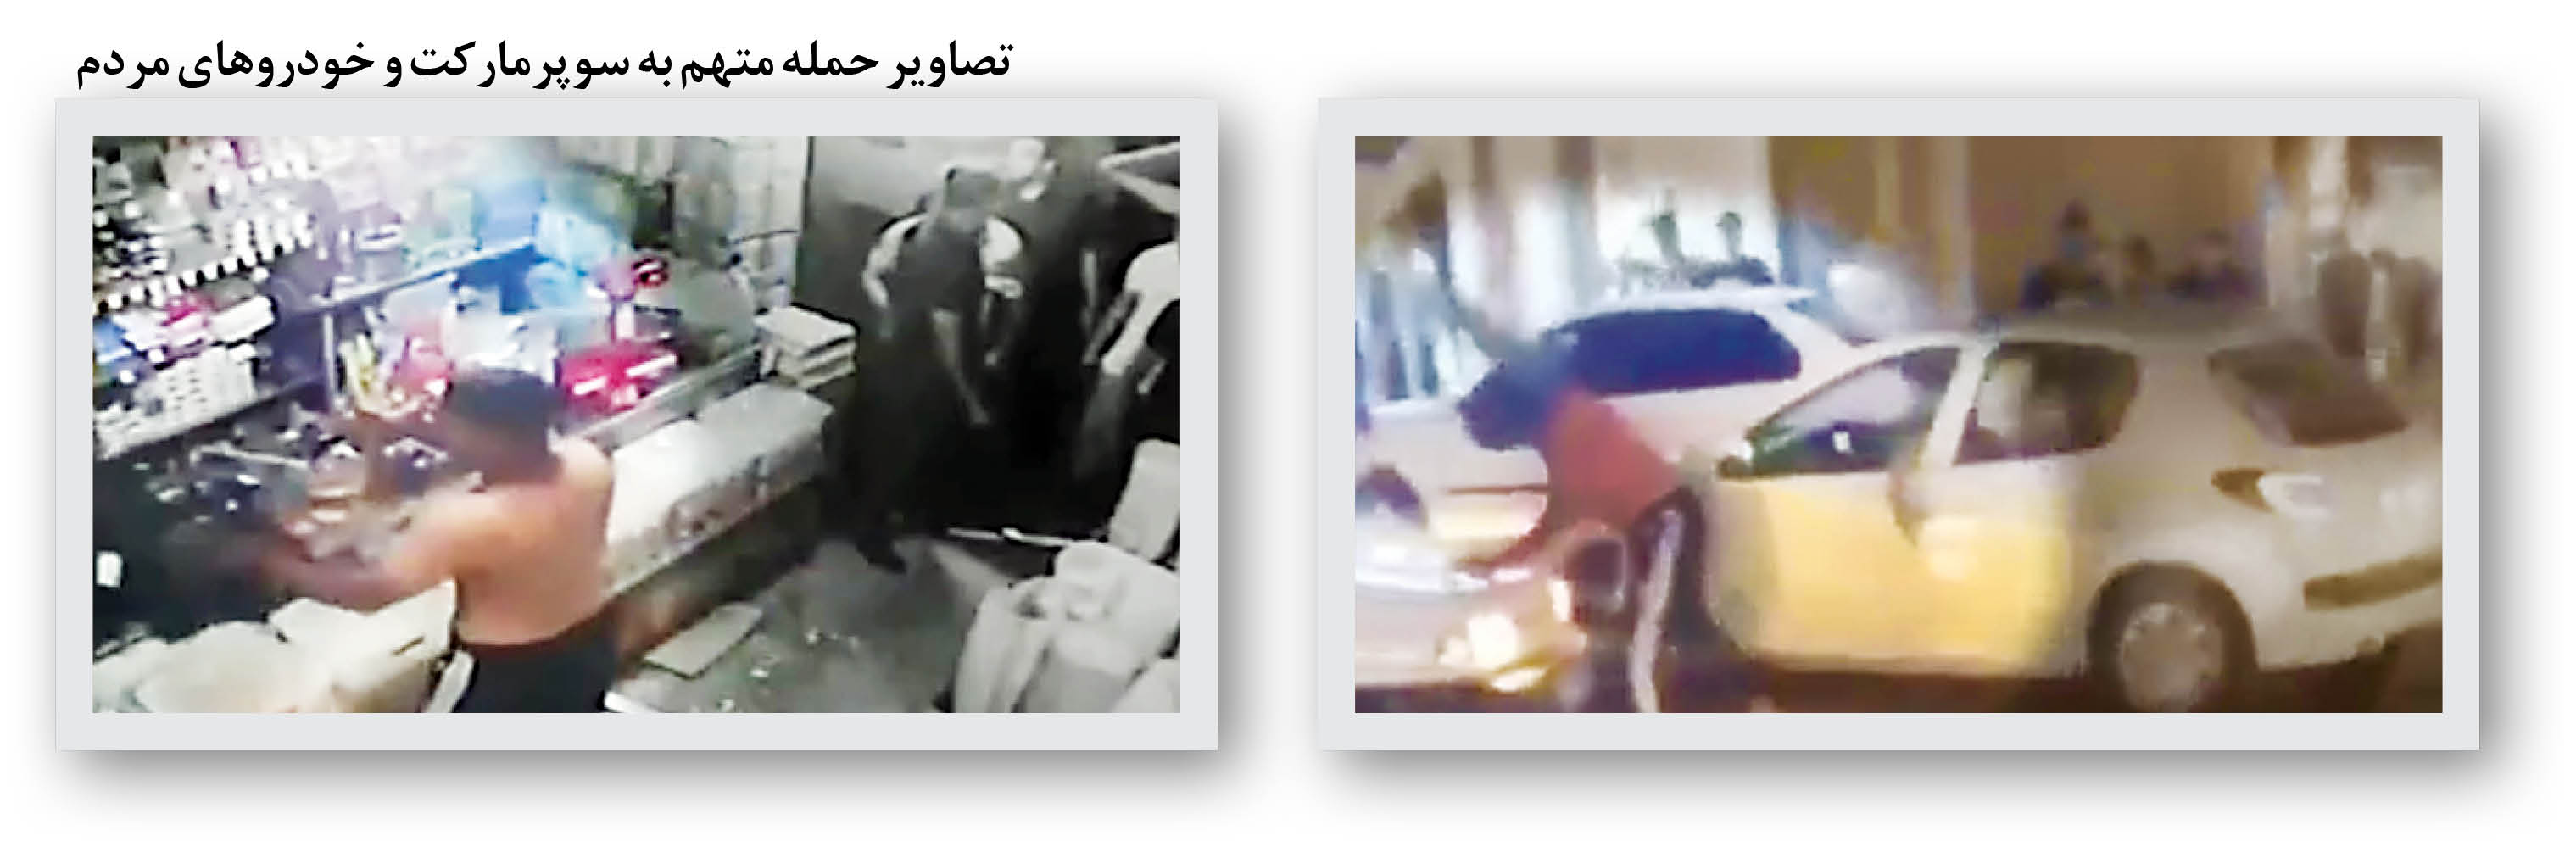 پشت پرده فیلم تیراندازی پلیس به شرور مهرشهر